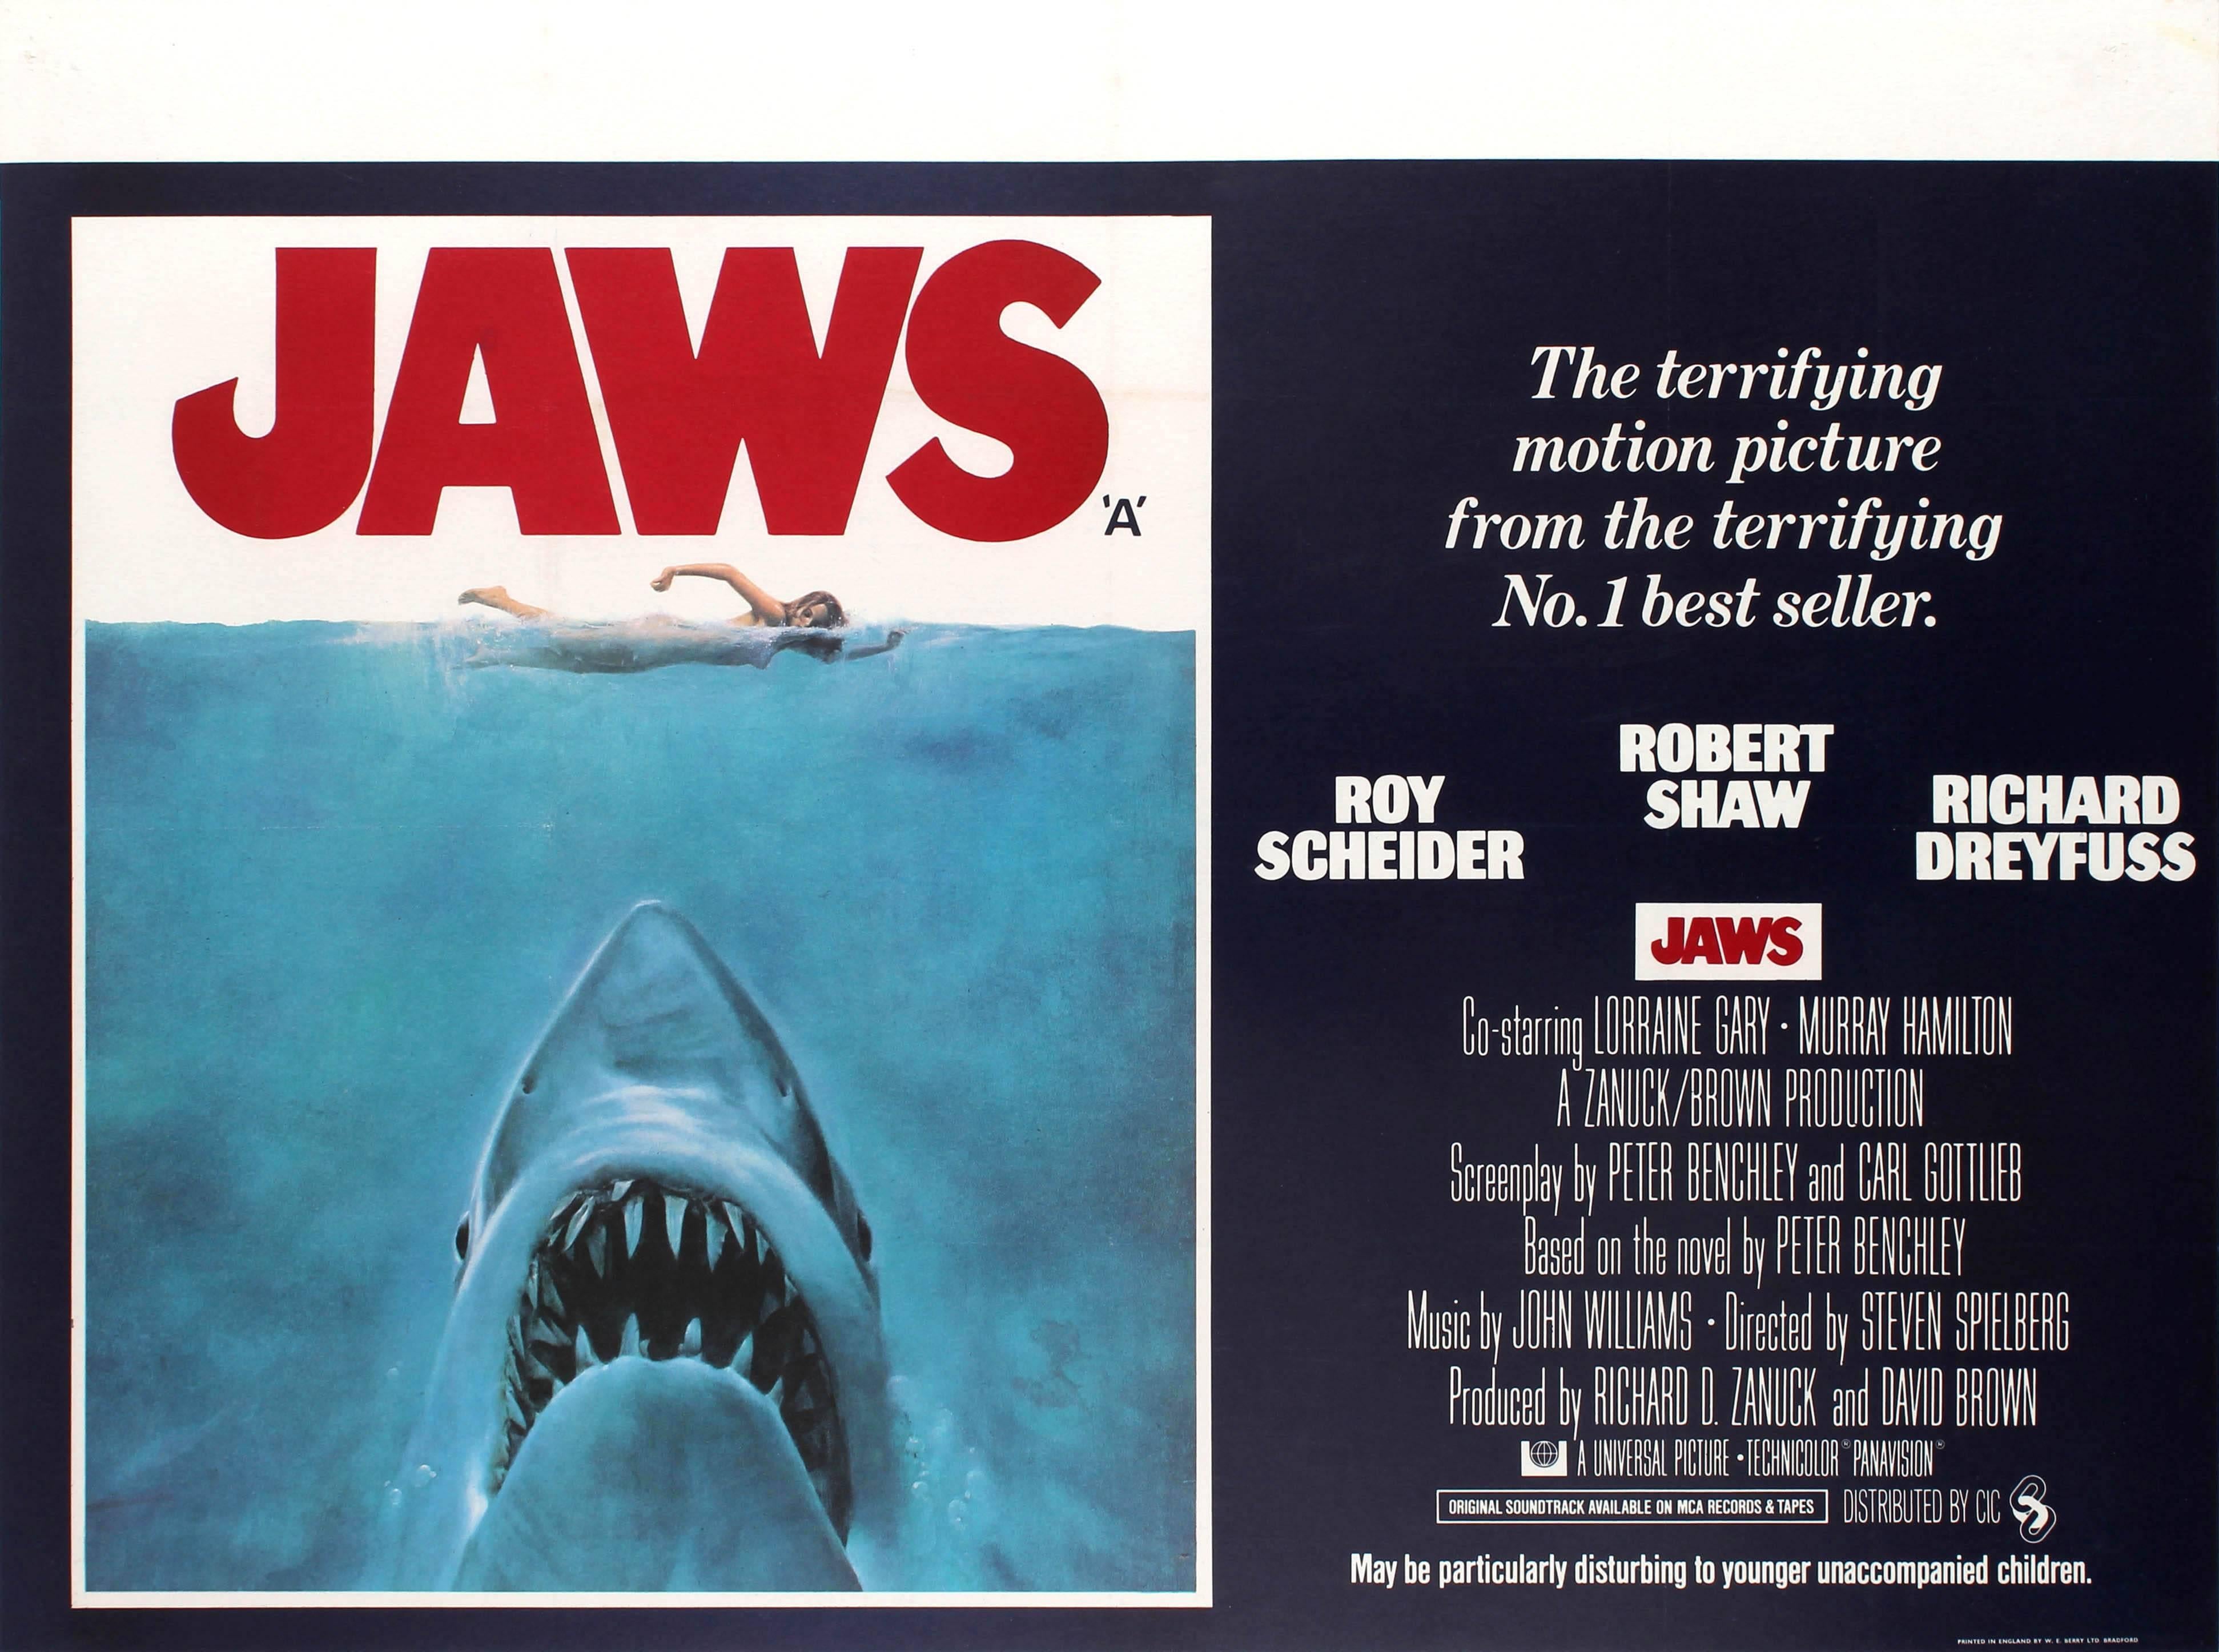 Roger Kastel Print - Original Vintage Classic Movie Poster For Spielberg's Thriller Film Jaws UK Quad